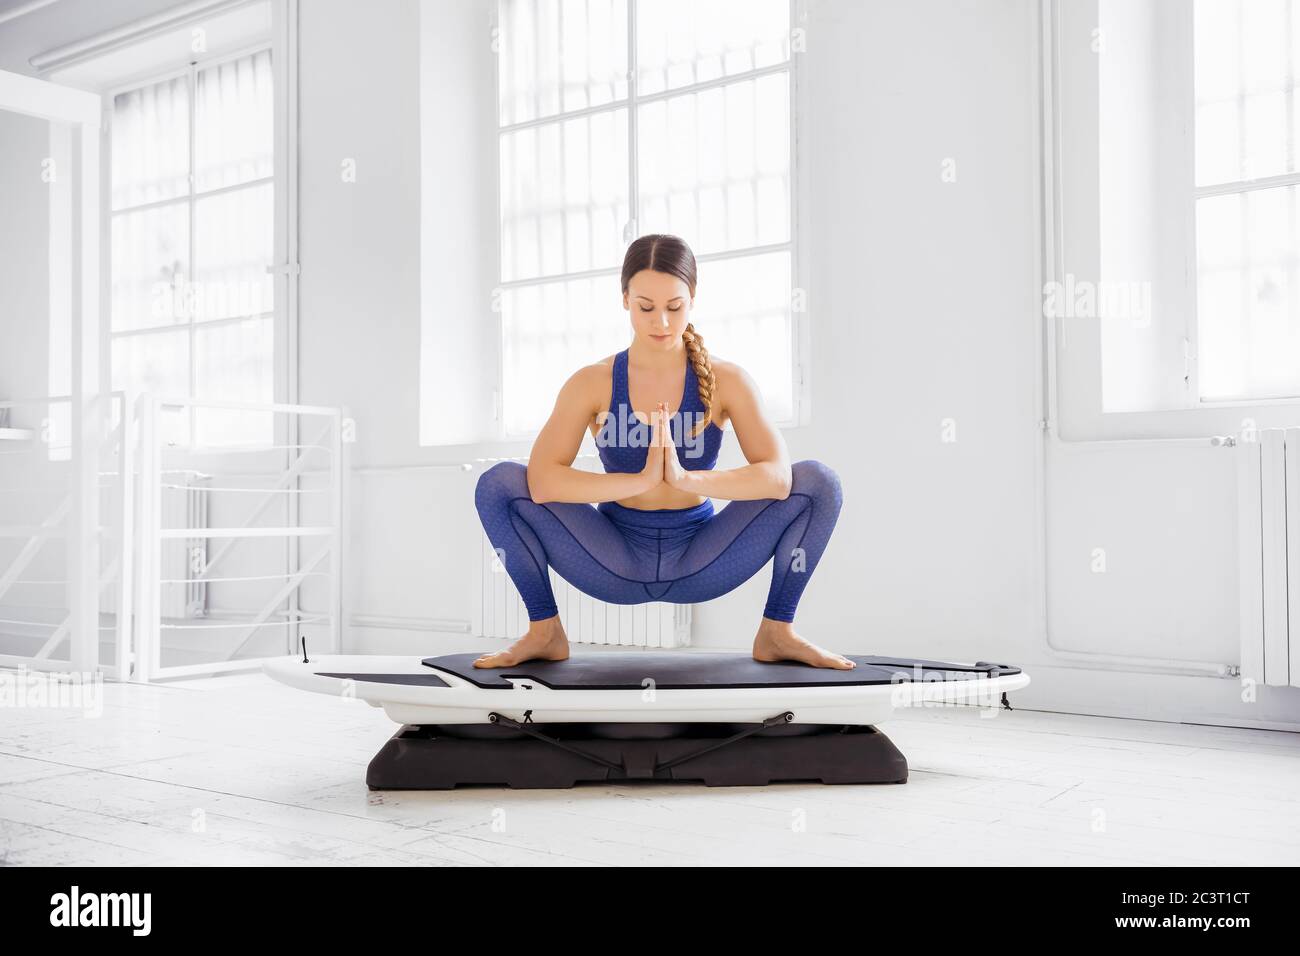 Donna che fa un surf yoga ghirland posa su una tavola in una vista frontale in una palestra chiave in un concetto di salute e fitness Foto Stock